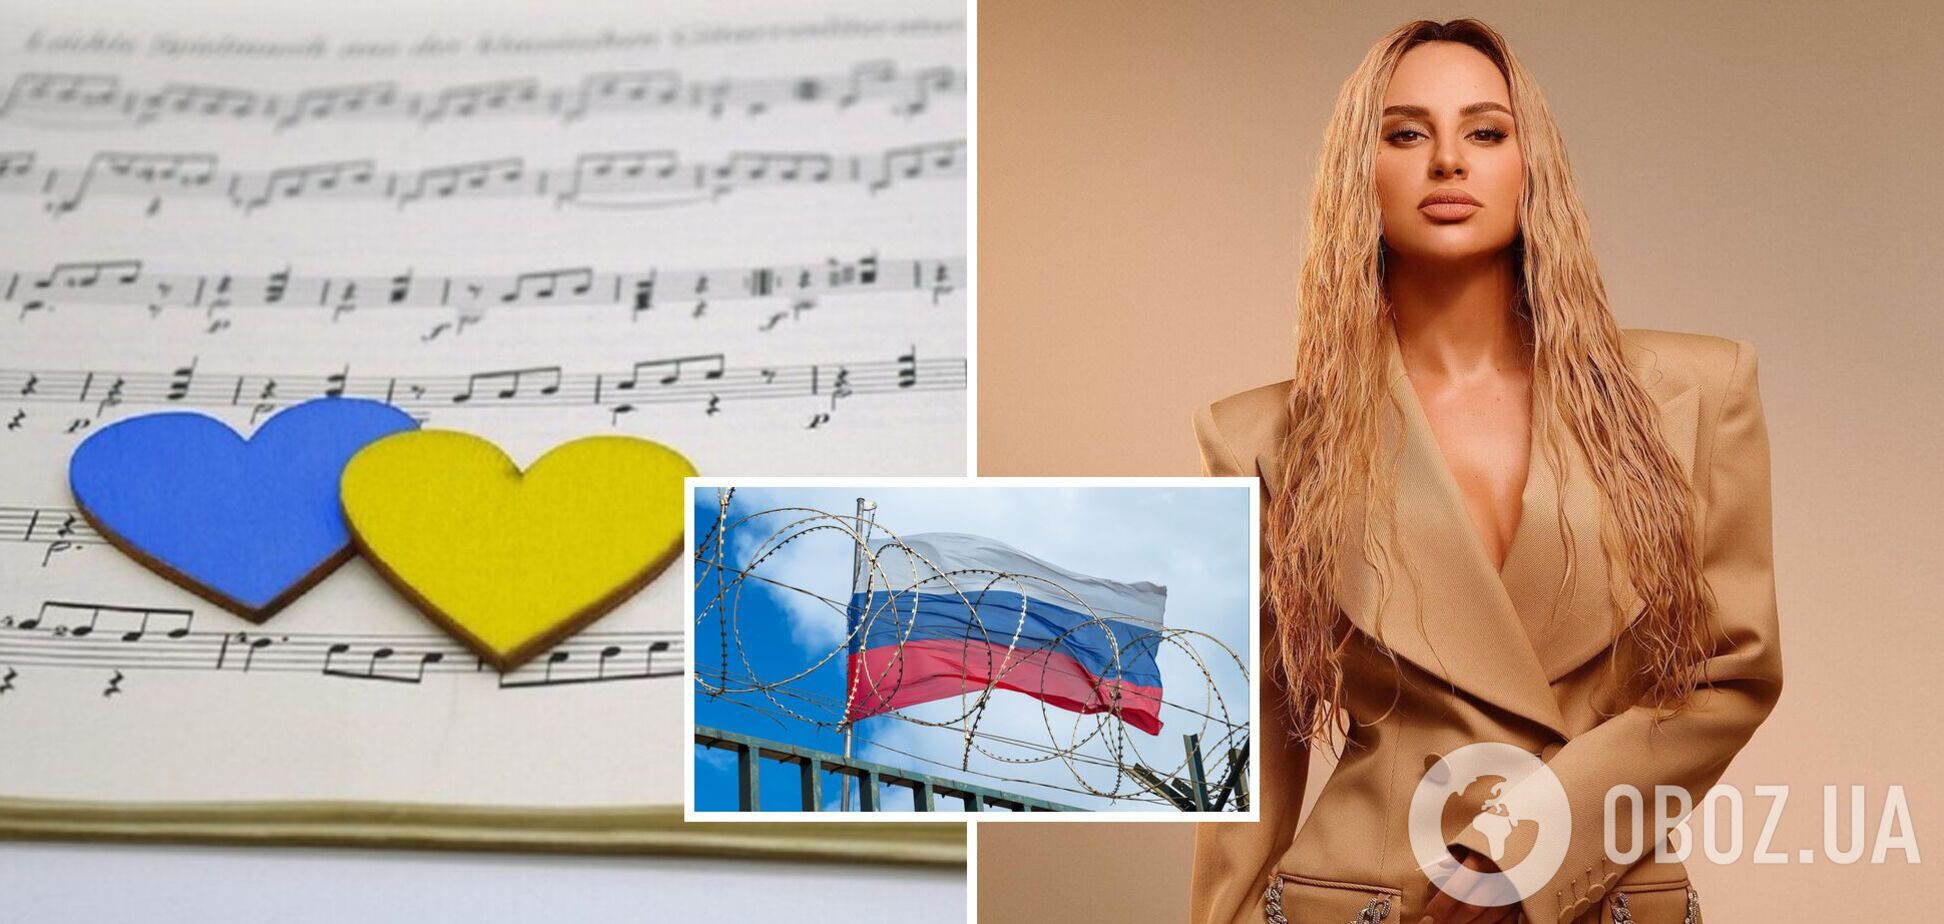 Певица ANNA ASTI из Черкасс, которая живет в Москве и молчит о войне, собралась записывать украиноязычную песню